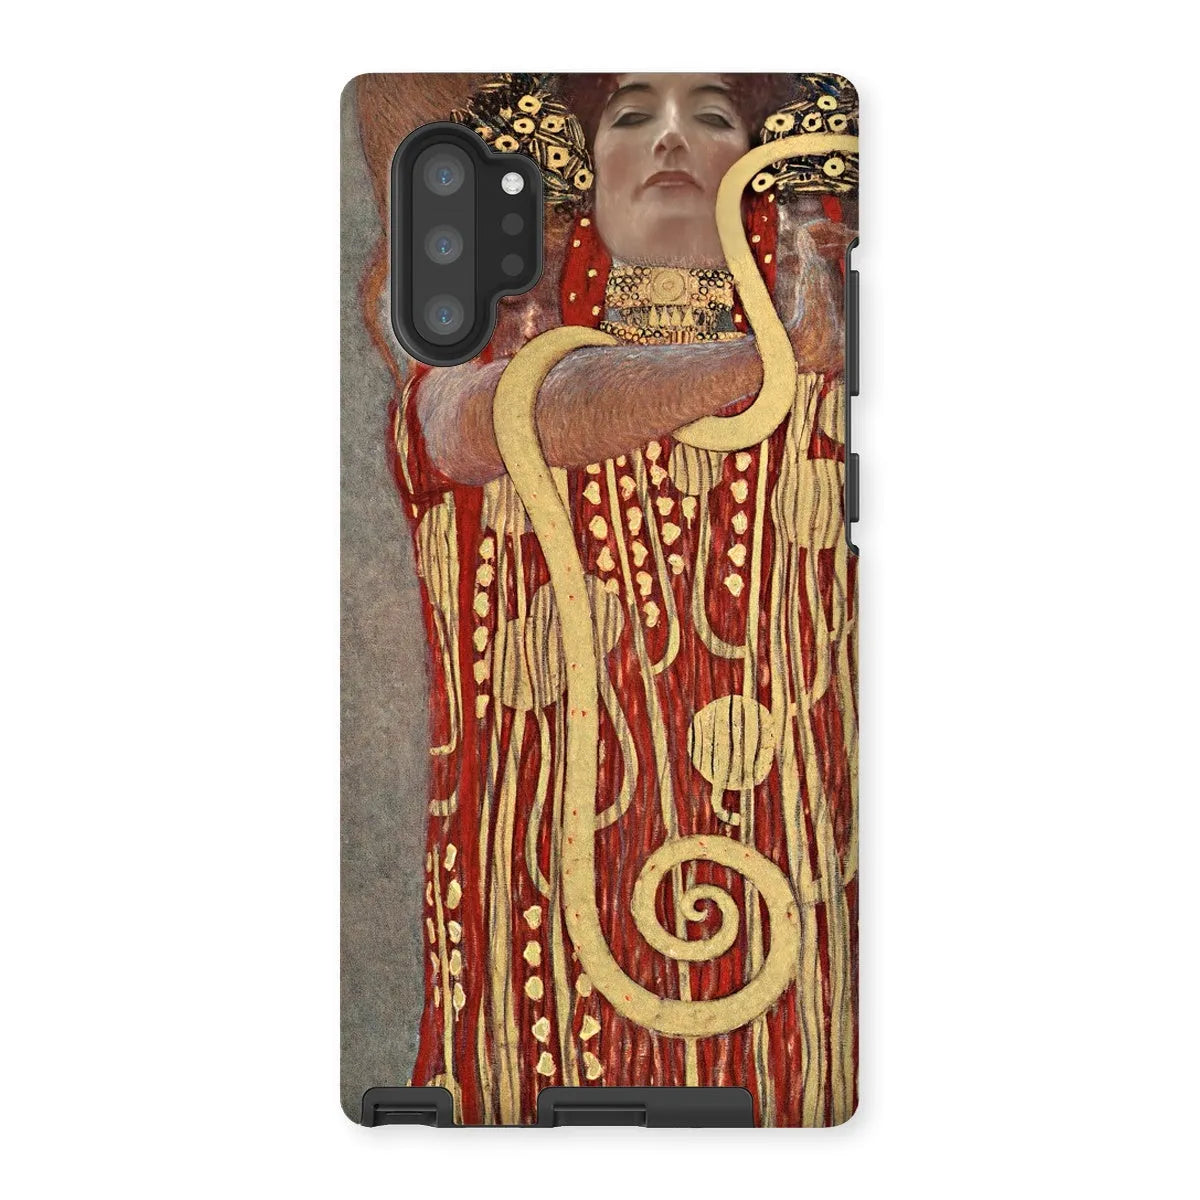 Hygieia - Vienna Succession Phone Case - Gustav Klimt - Samsung Galaxy Note 10p / Matte - Mobile Phone Cases